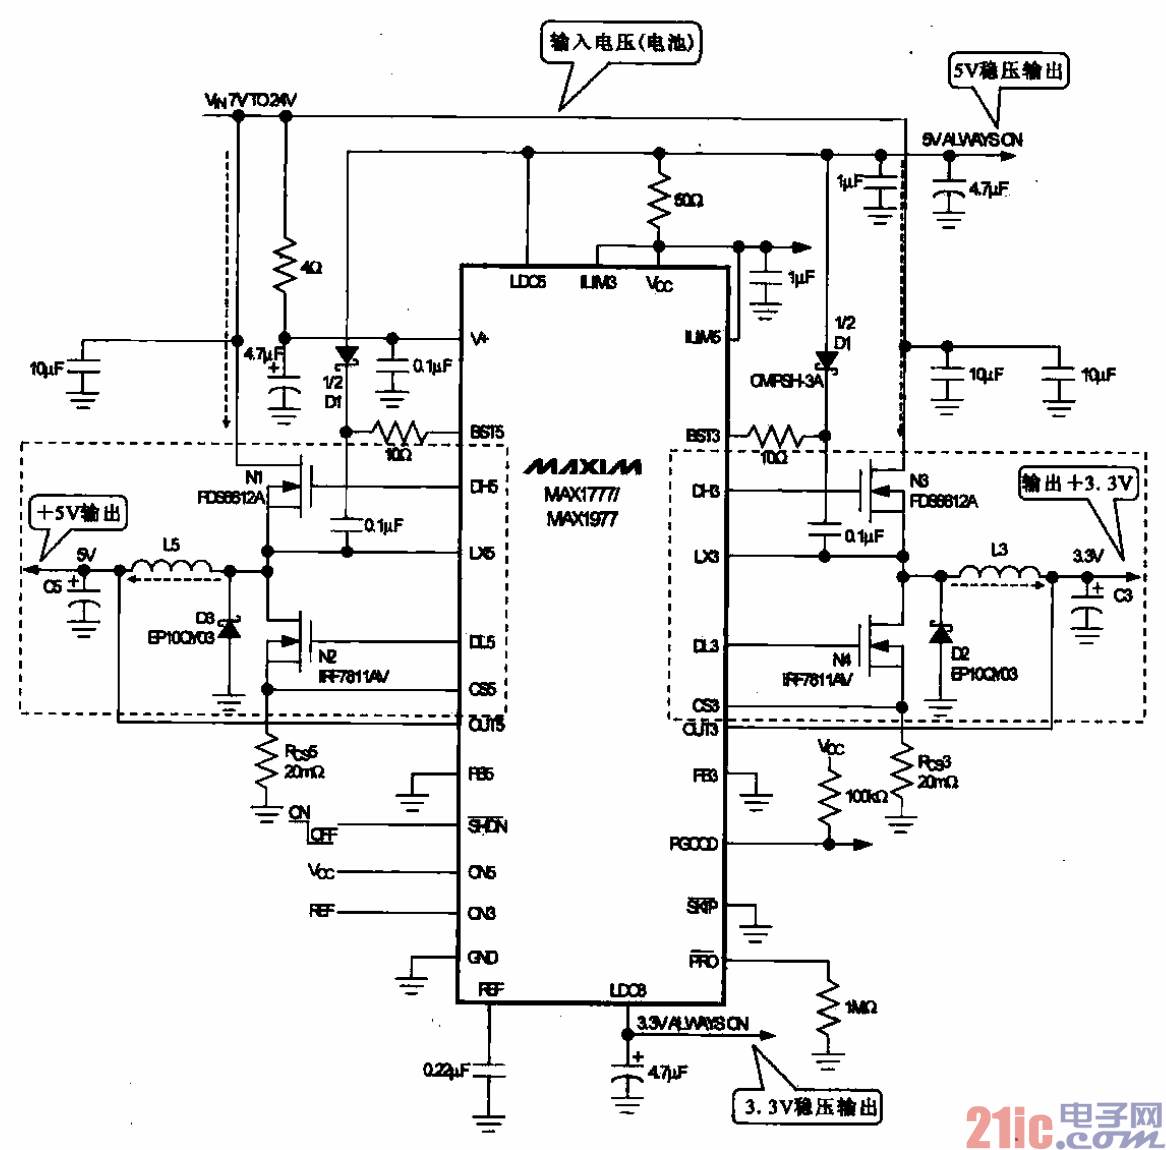 22.采用电源管理芯片MAX1777-1977的高效4输出嗲元控制器.gif